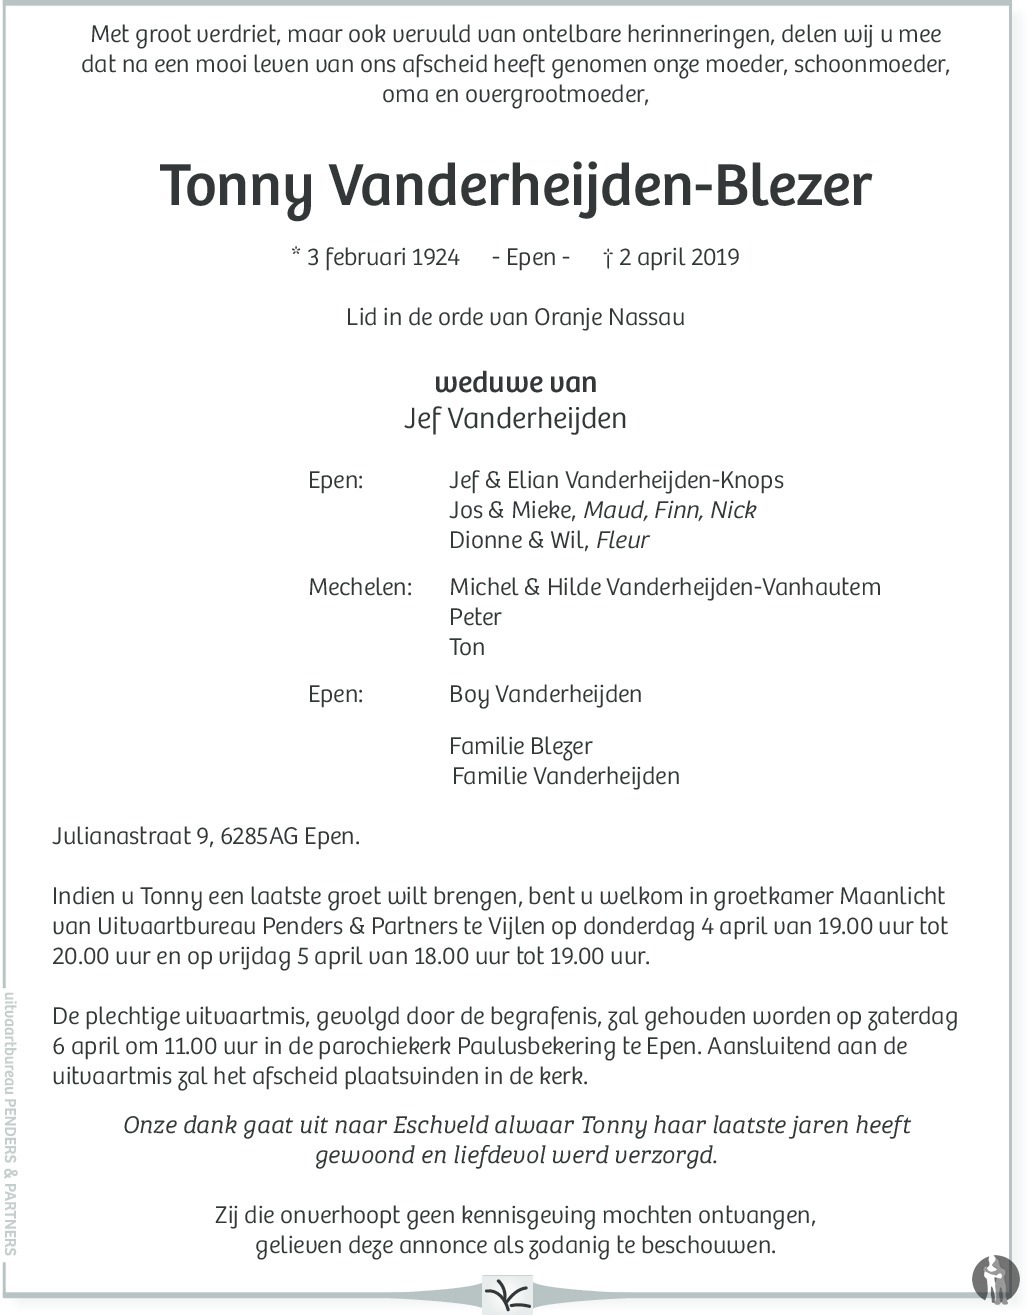 Overlijdensbericht van Tonny Vanderheijden - Blezer in De Limburger